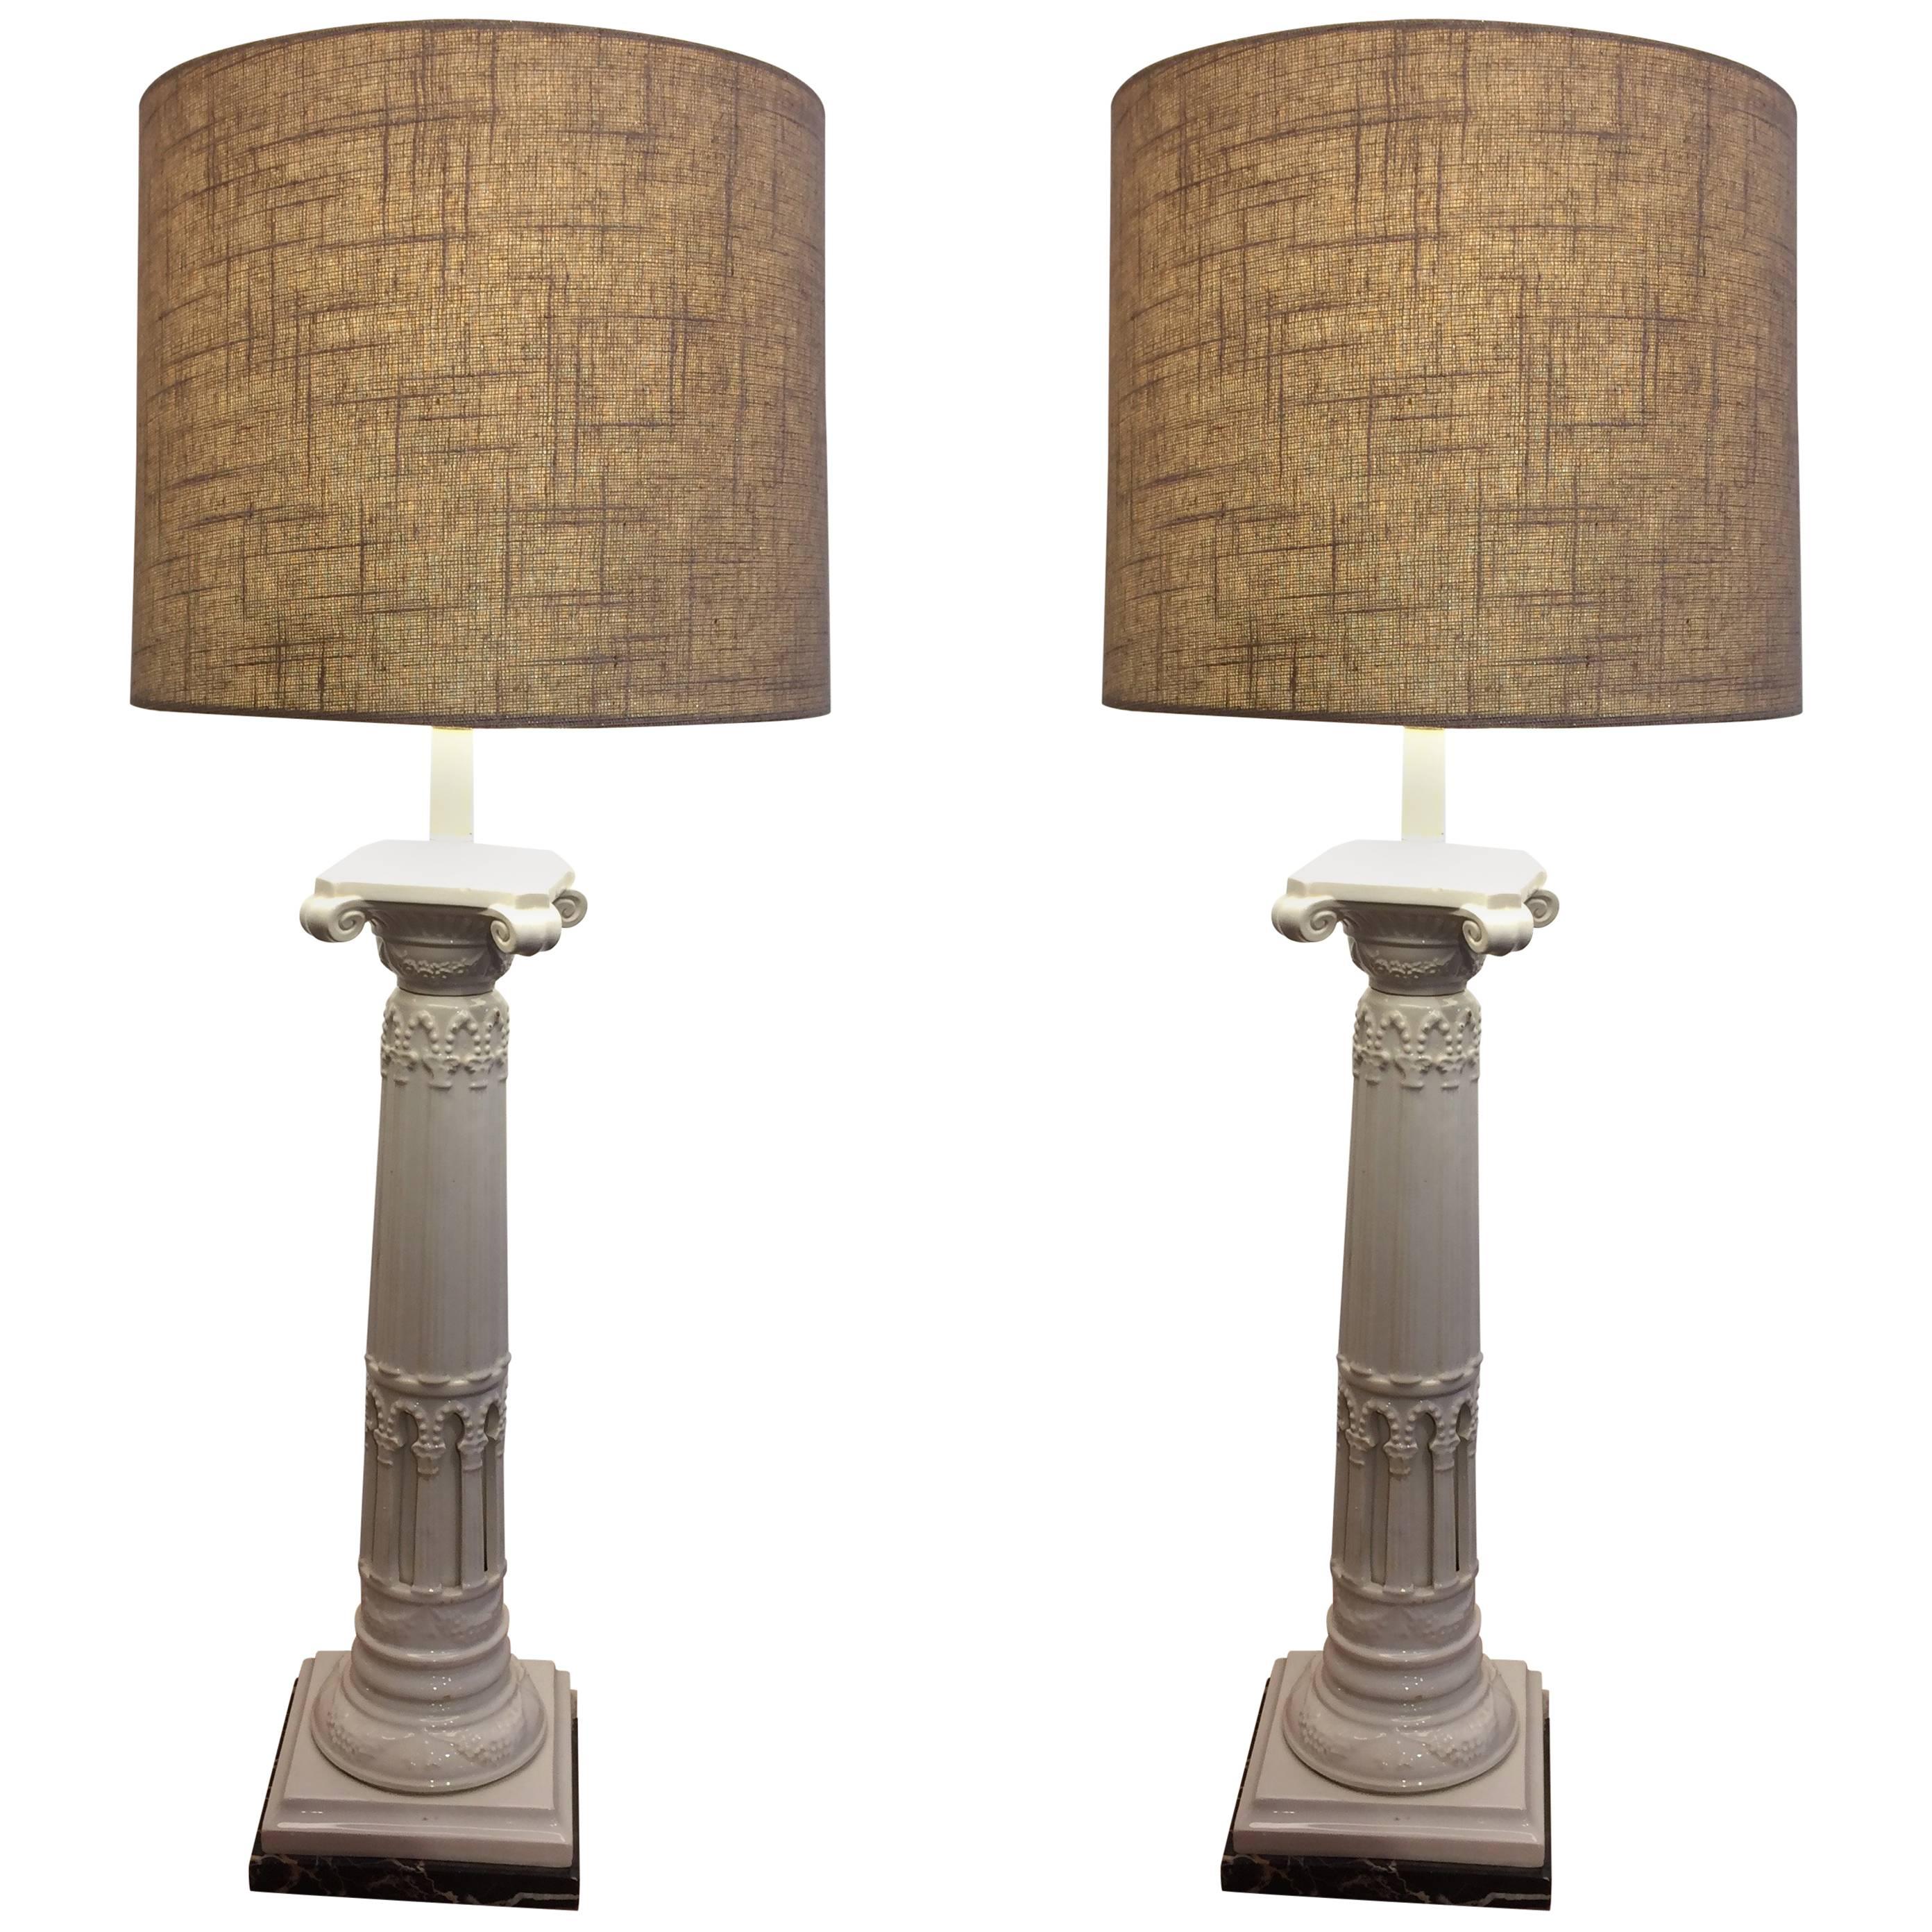 Fabulous Pair of Neoclassical Ceramic Column Motif Table Lamps